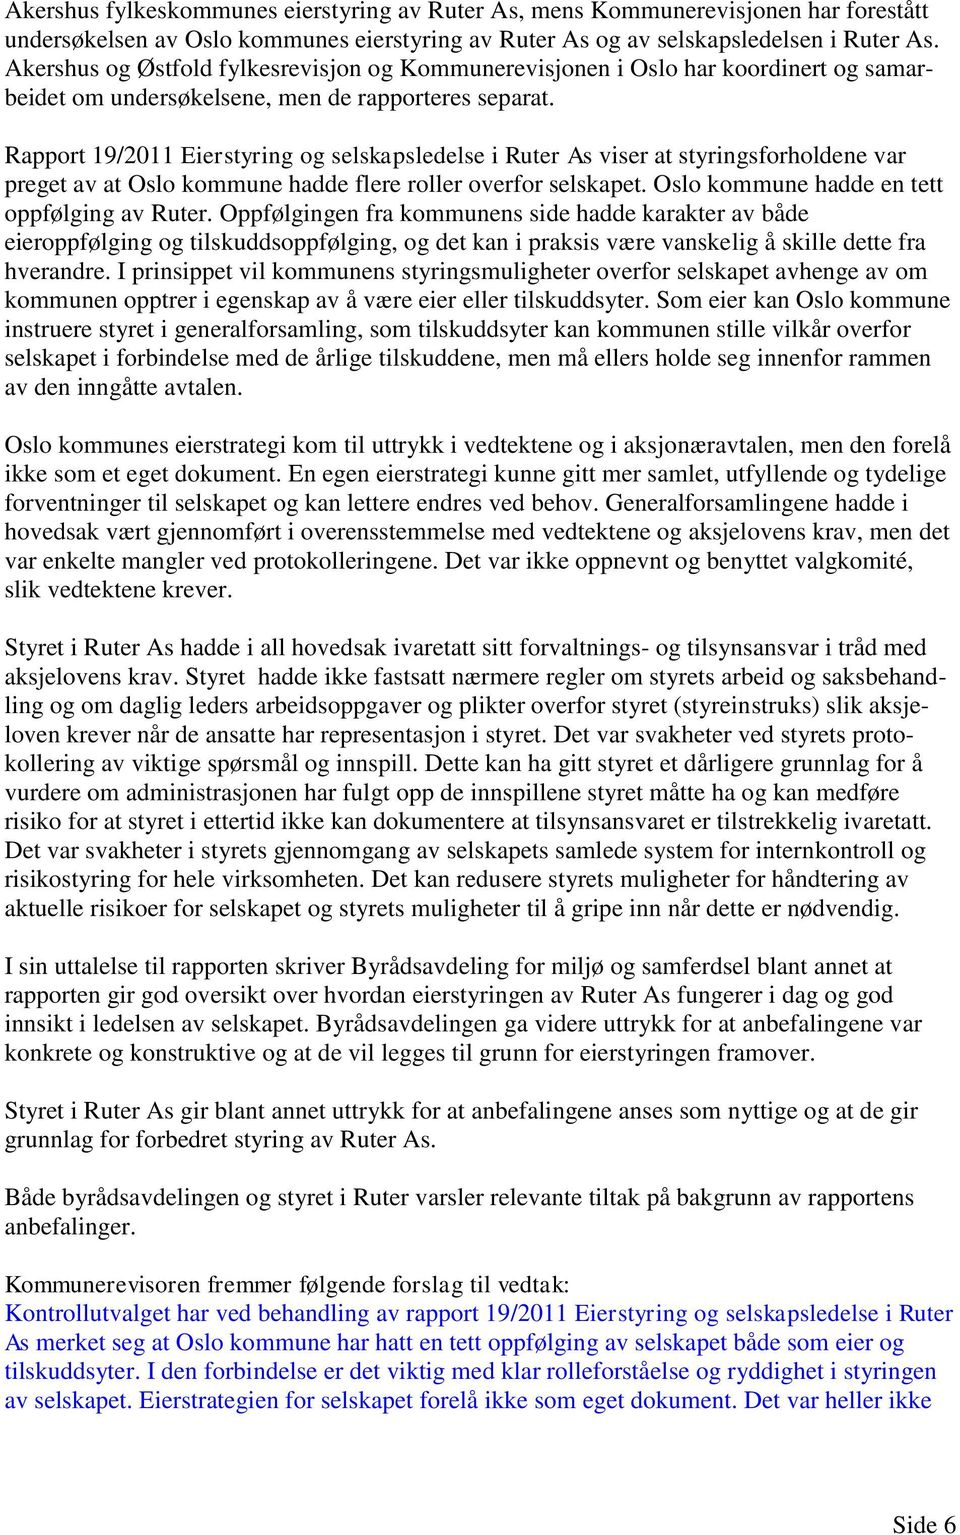 Rapport 19/2011 Eierstyring og selskapsledelse i Ruter As viser at styringsforholdene var preget av at Oslo kommune hadde flere roller overfor selskapet.